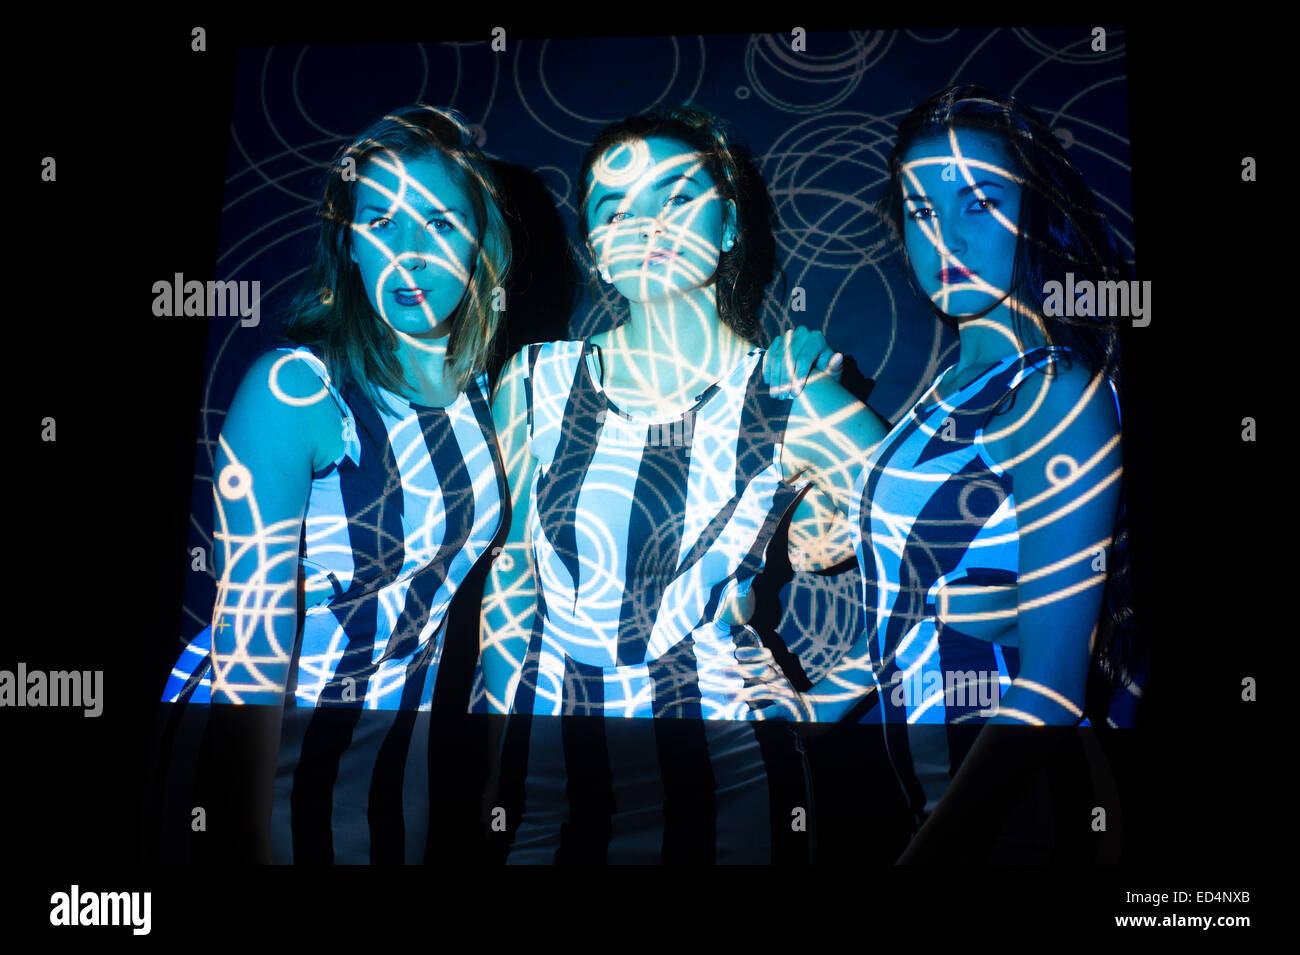 Digitale Kunst: drei junge Frauen Mädchen mit wirbelnden Digitalbild Spiralmuster auf ihren Gesichtern projiziert. Stockfoto